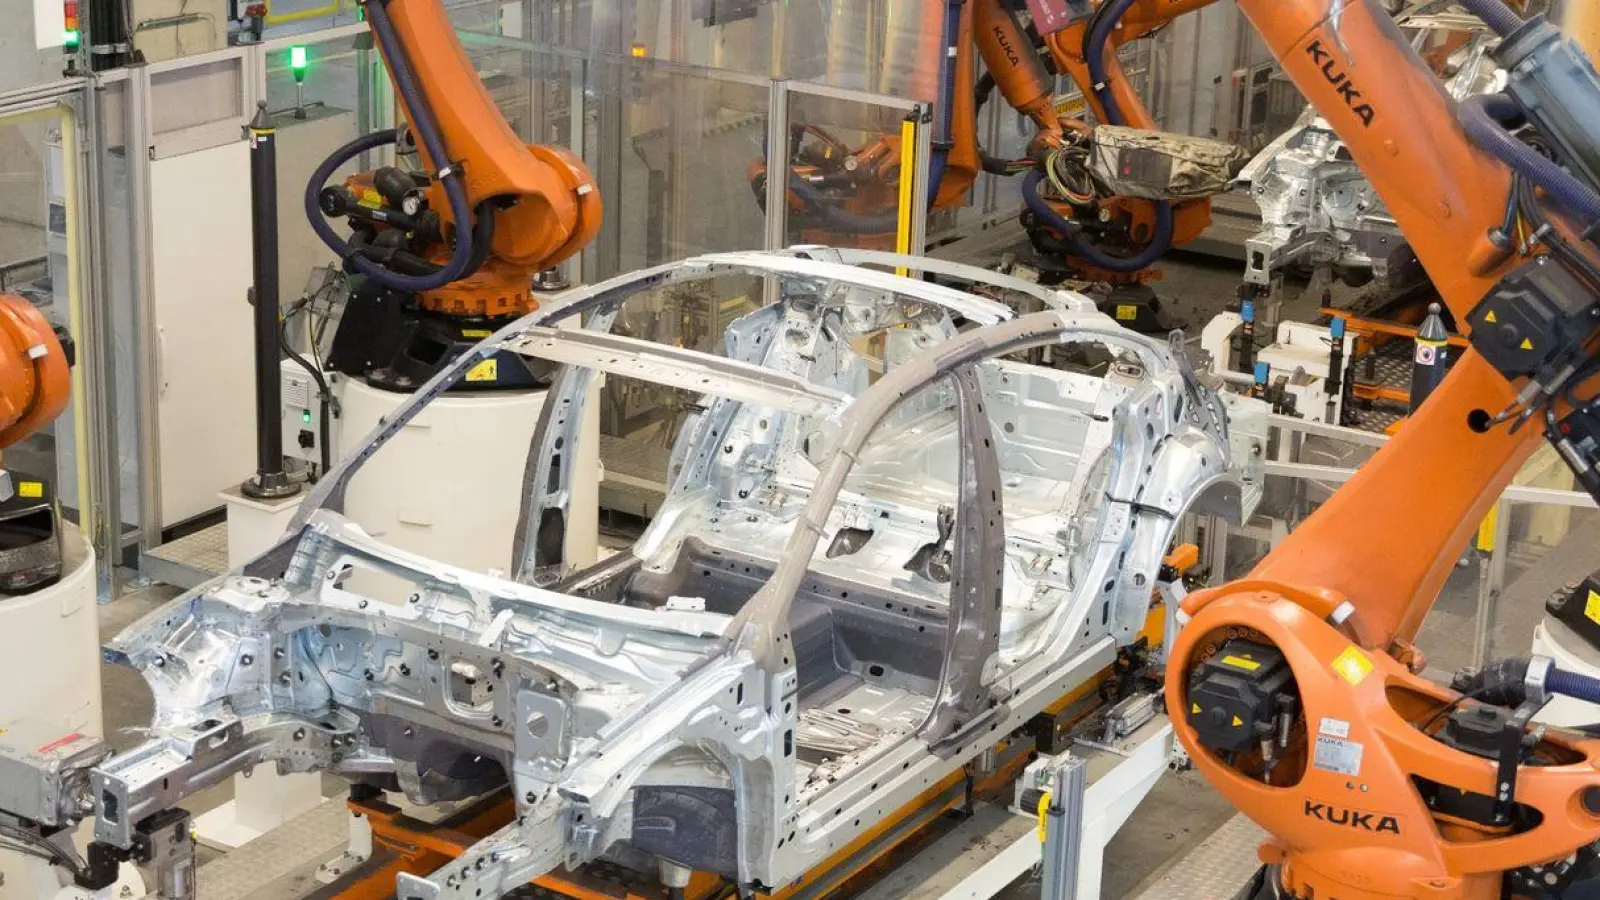 eile eines Volkswagens werden im Karosseriewerk im Volkswagen Werk Emden von Kuka-Robotern zusammengefügt. (Foto: Jörg Sarbach/dpa)